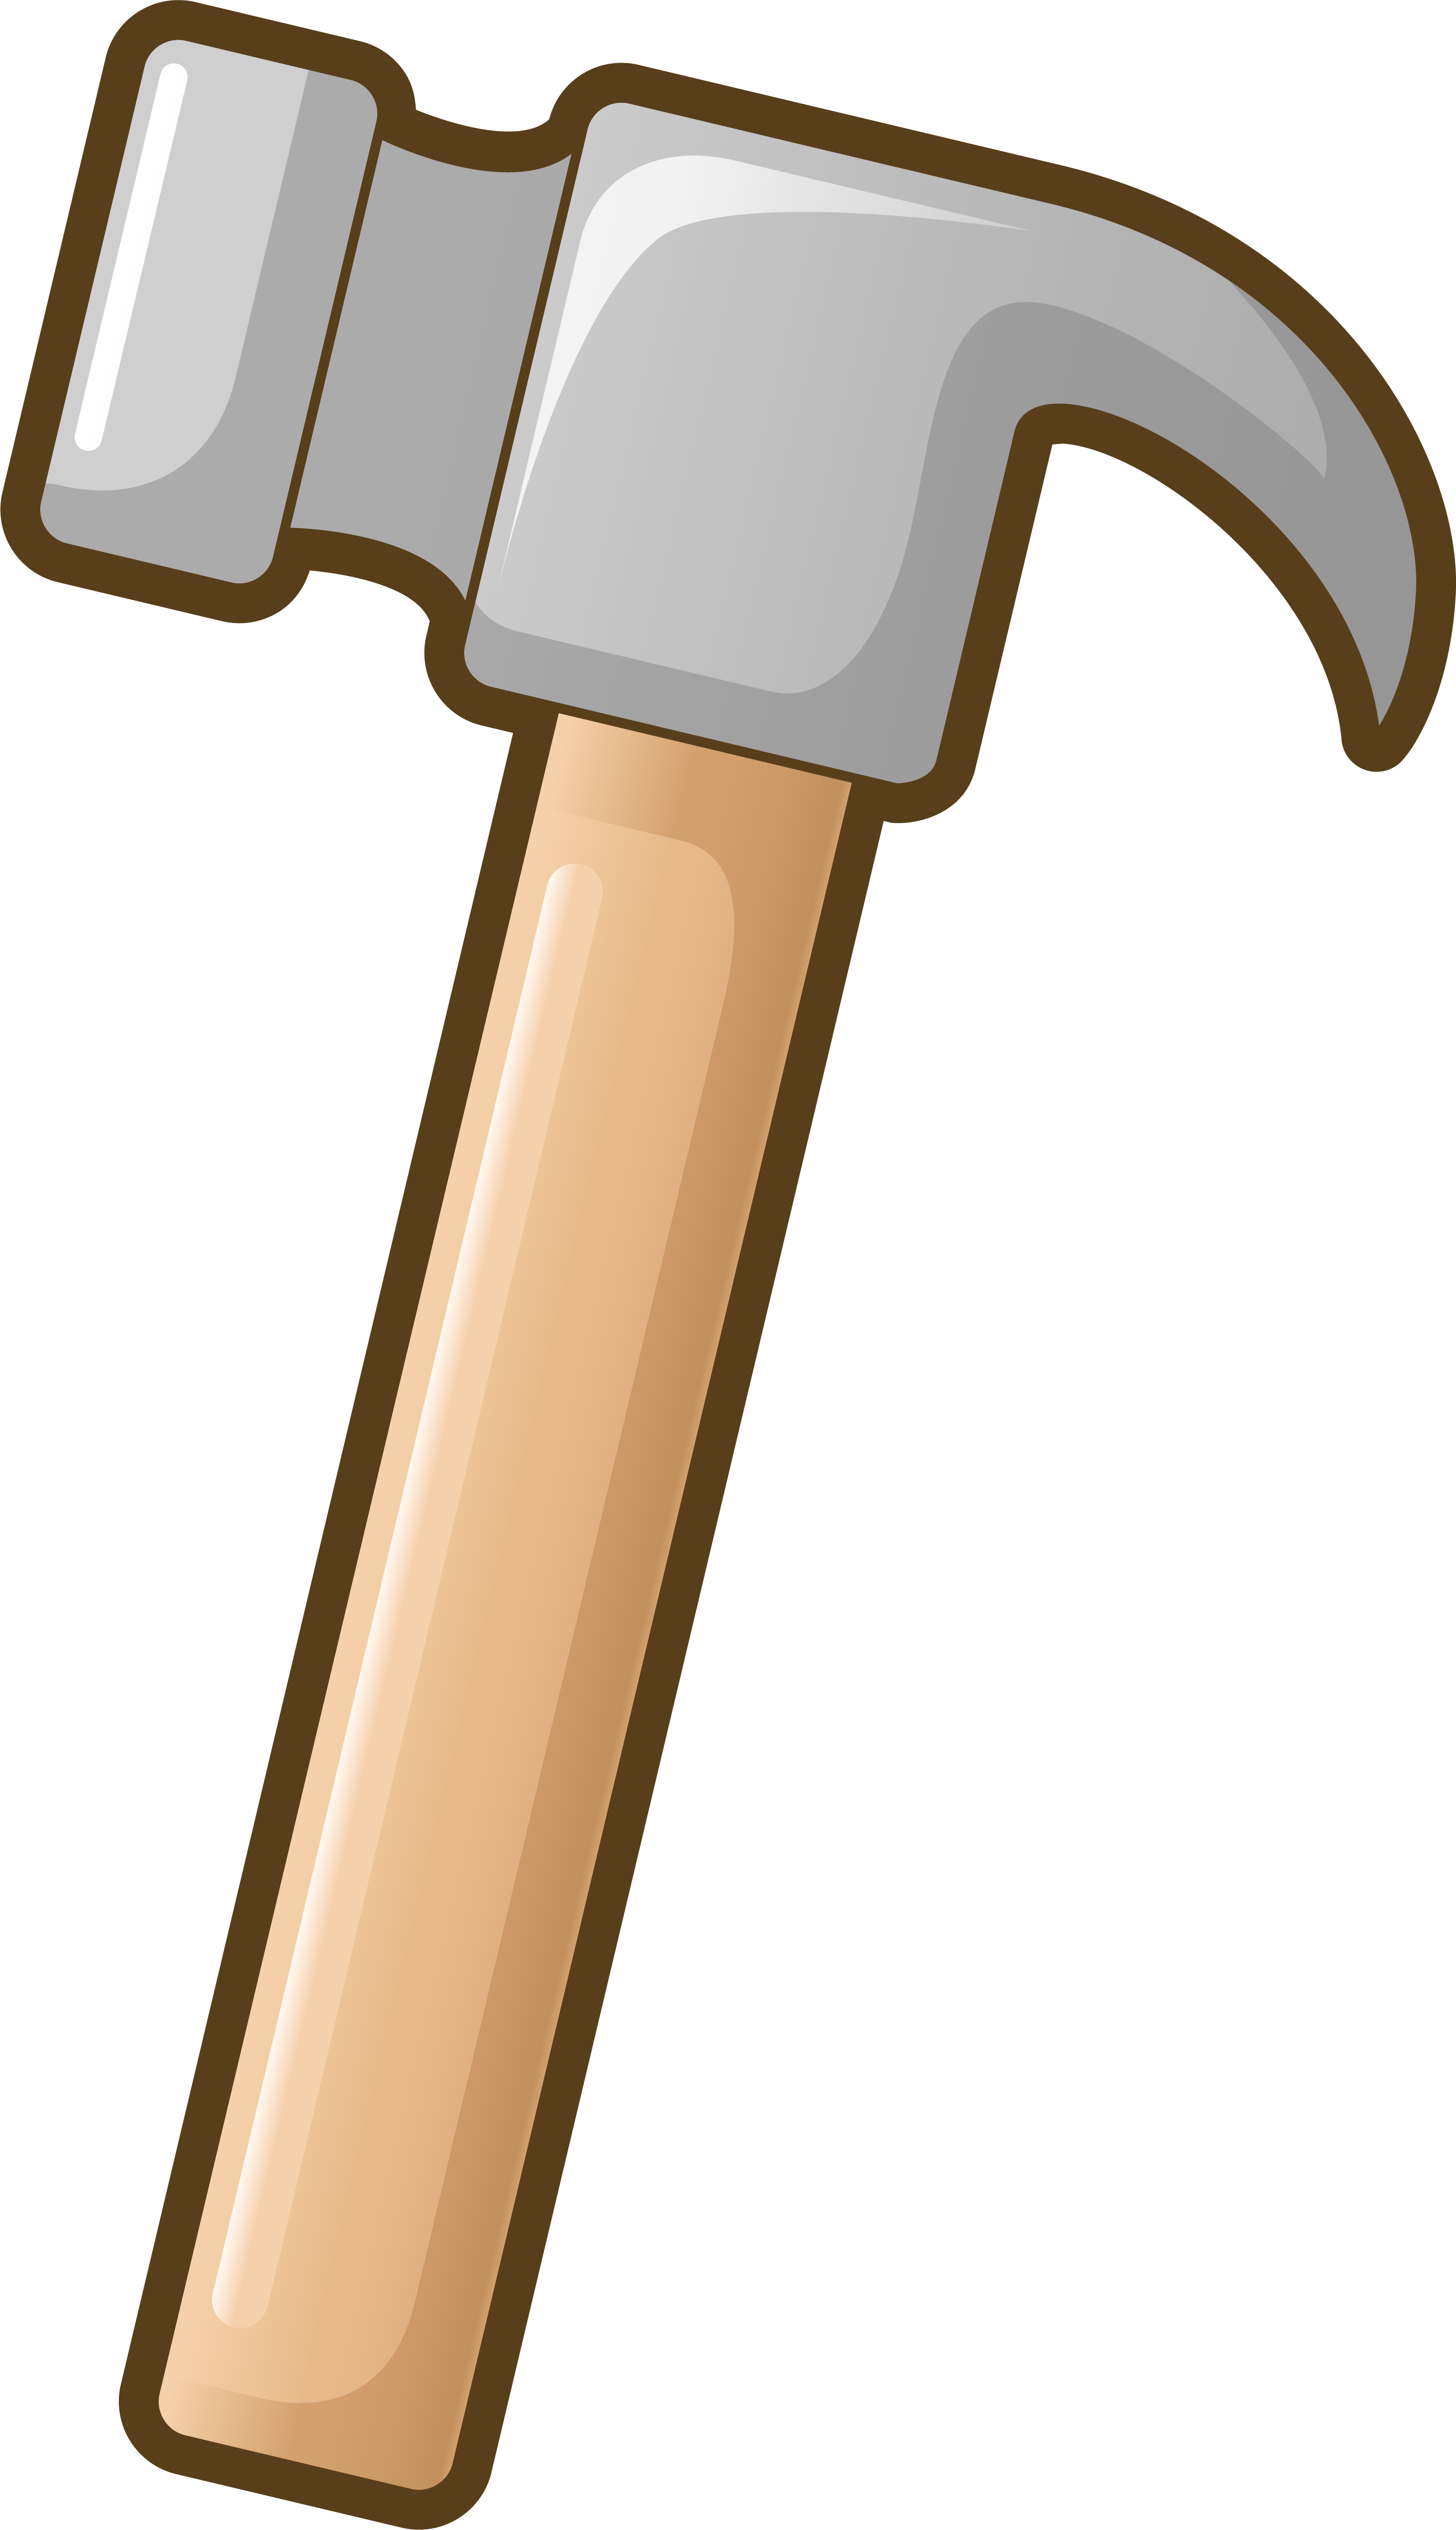 Hammer tool cartoon.